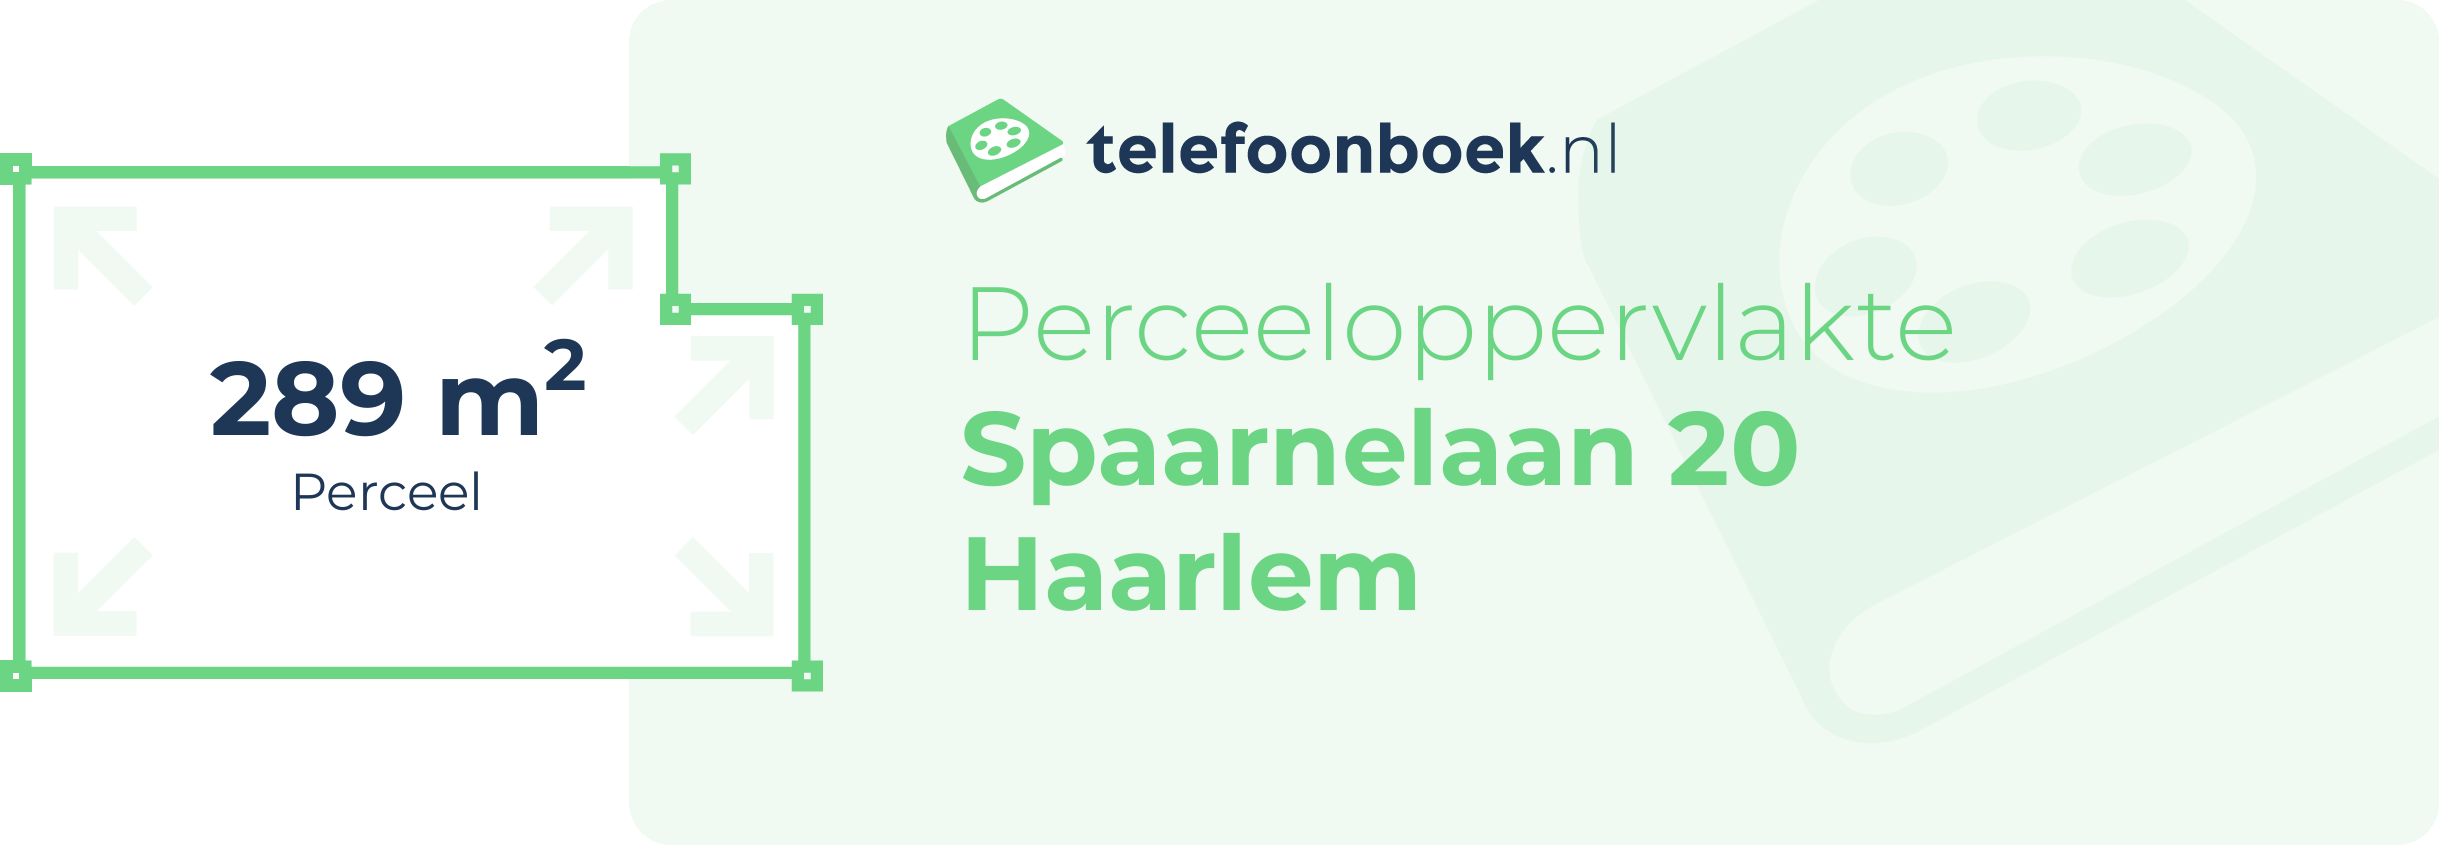 Perceeloppervlakte Spaarnelaan 20 Haarlem